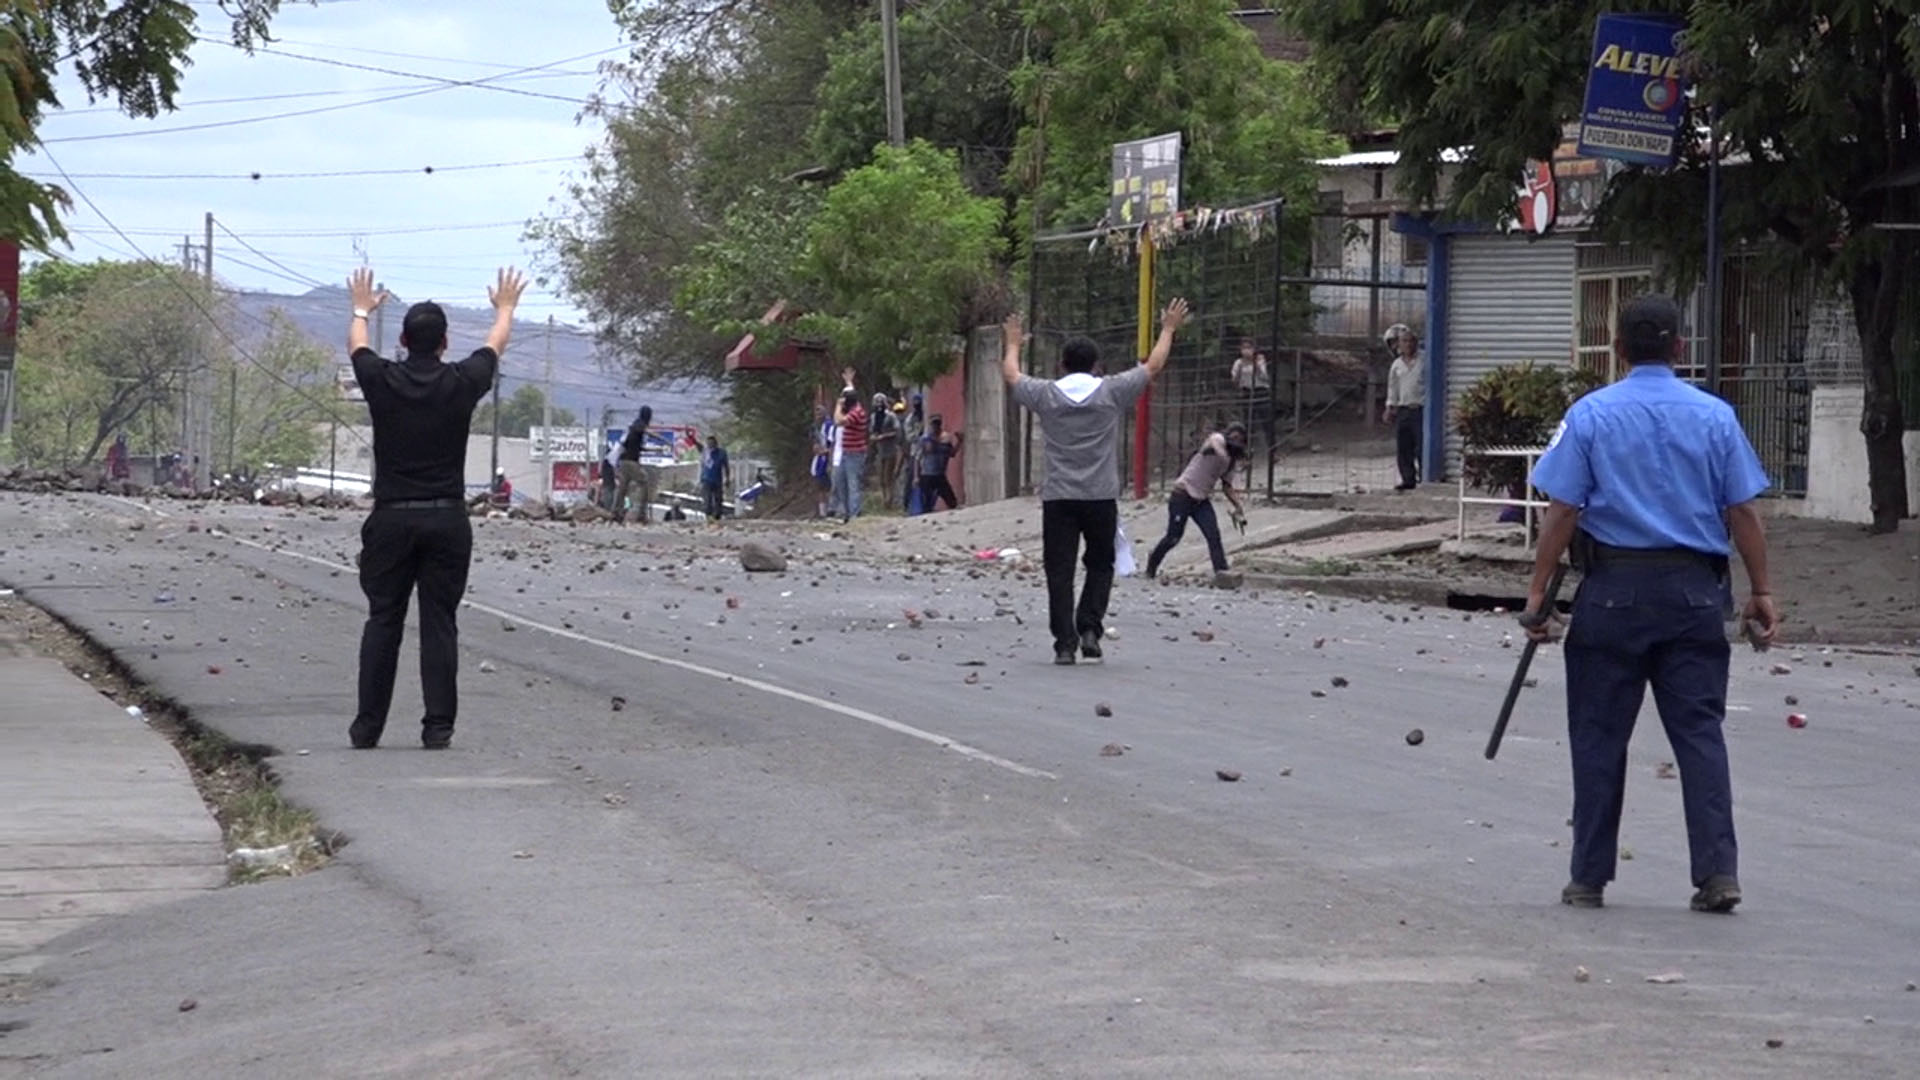 Regering Nicaragua verbiedt kruisweg en processies